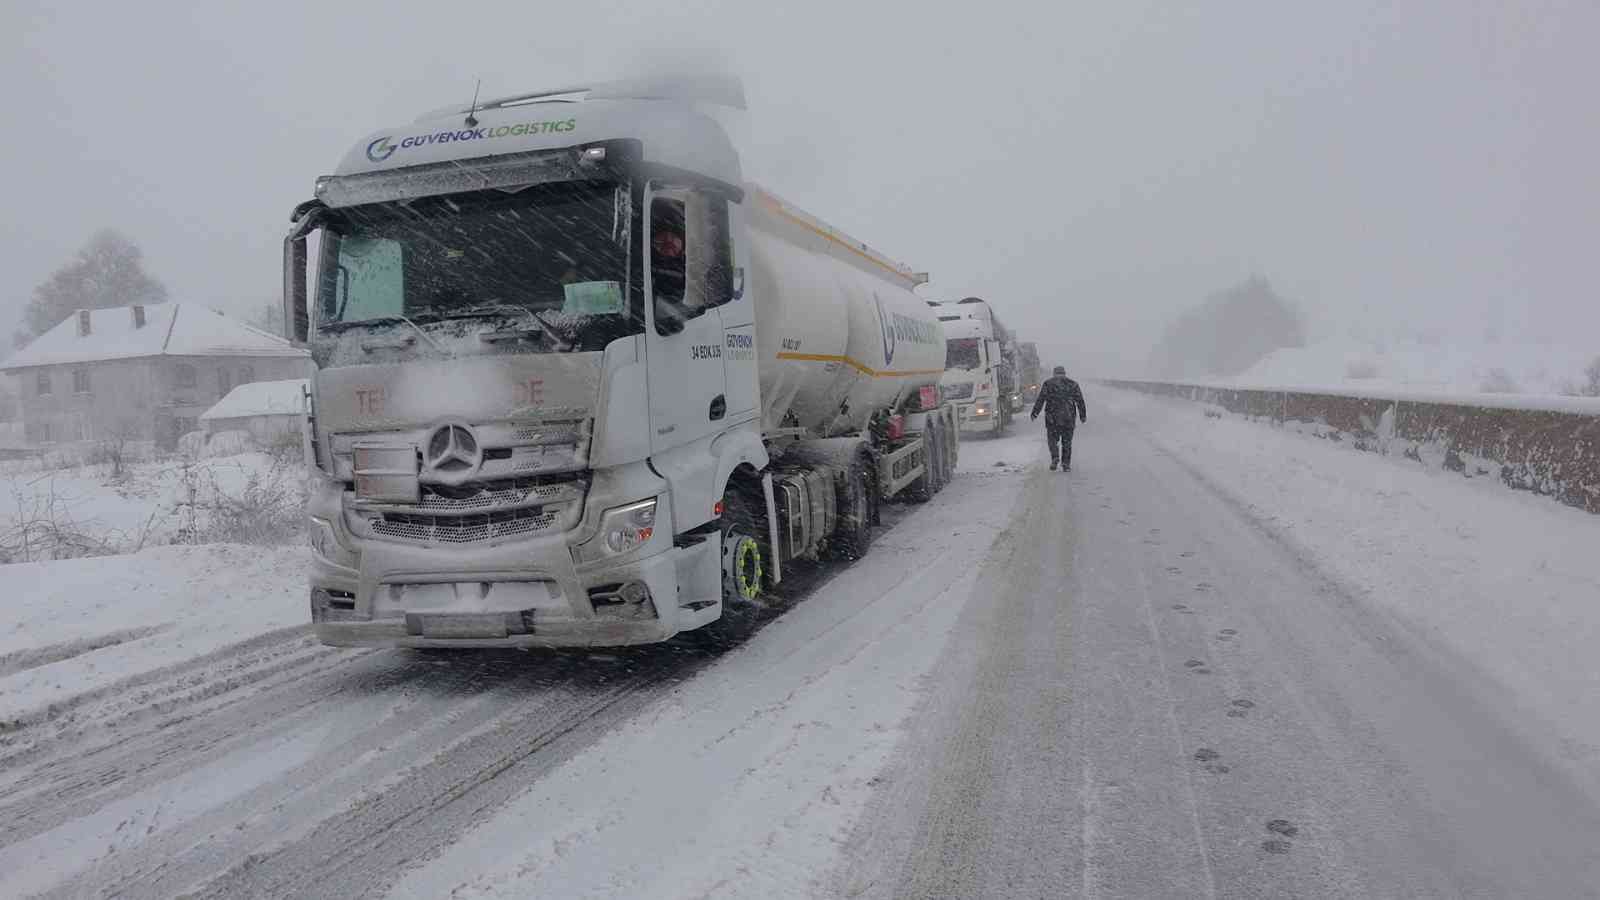 Bolu Dağı İstanbul yönüne ağır tonajlı araçların geçişleri yasaklandı #bolu